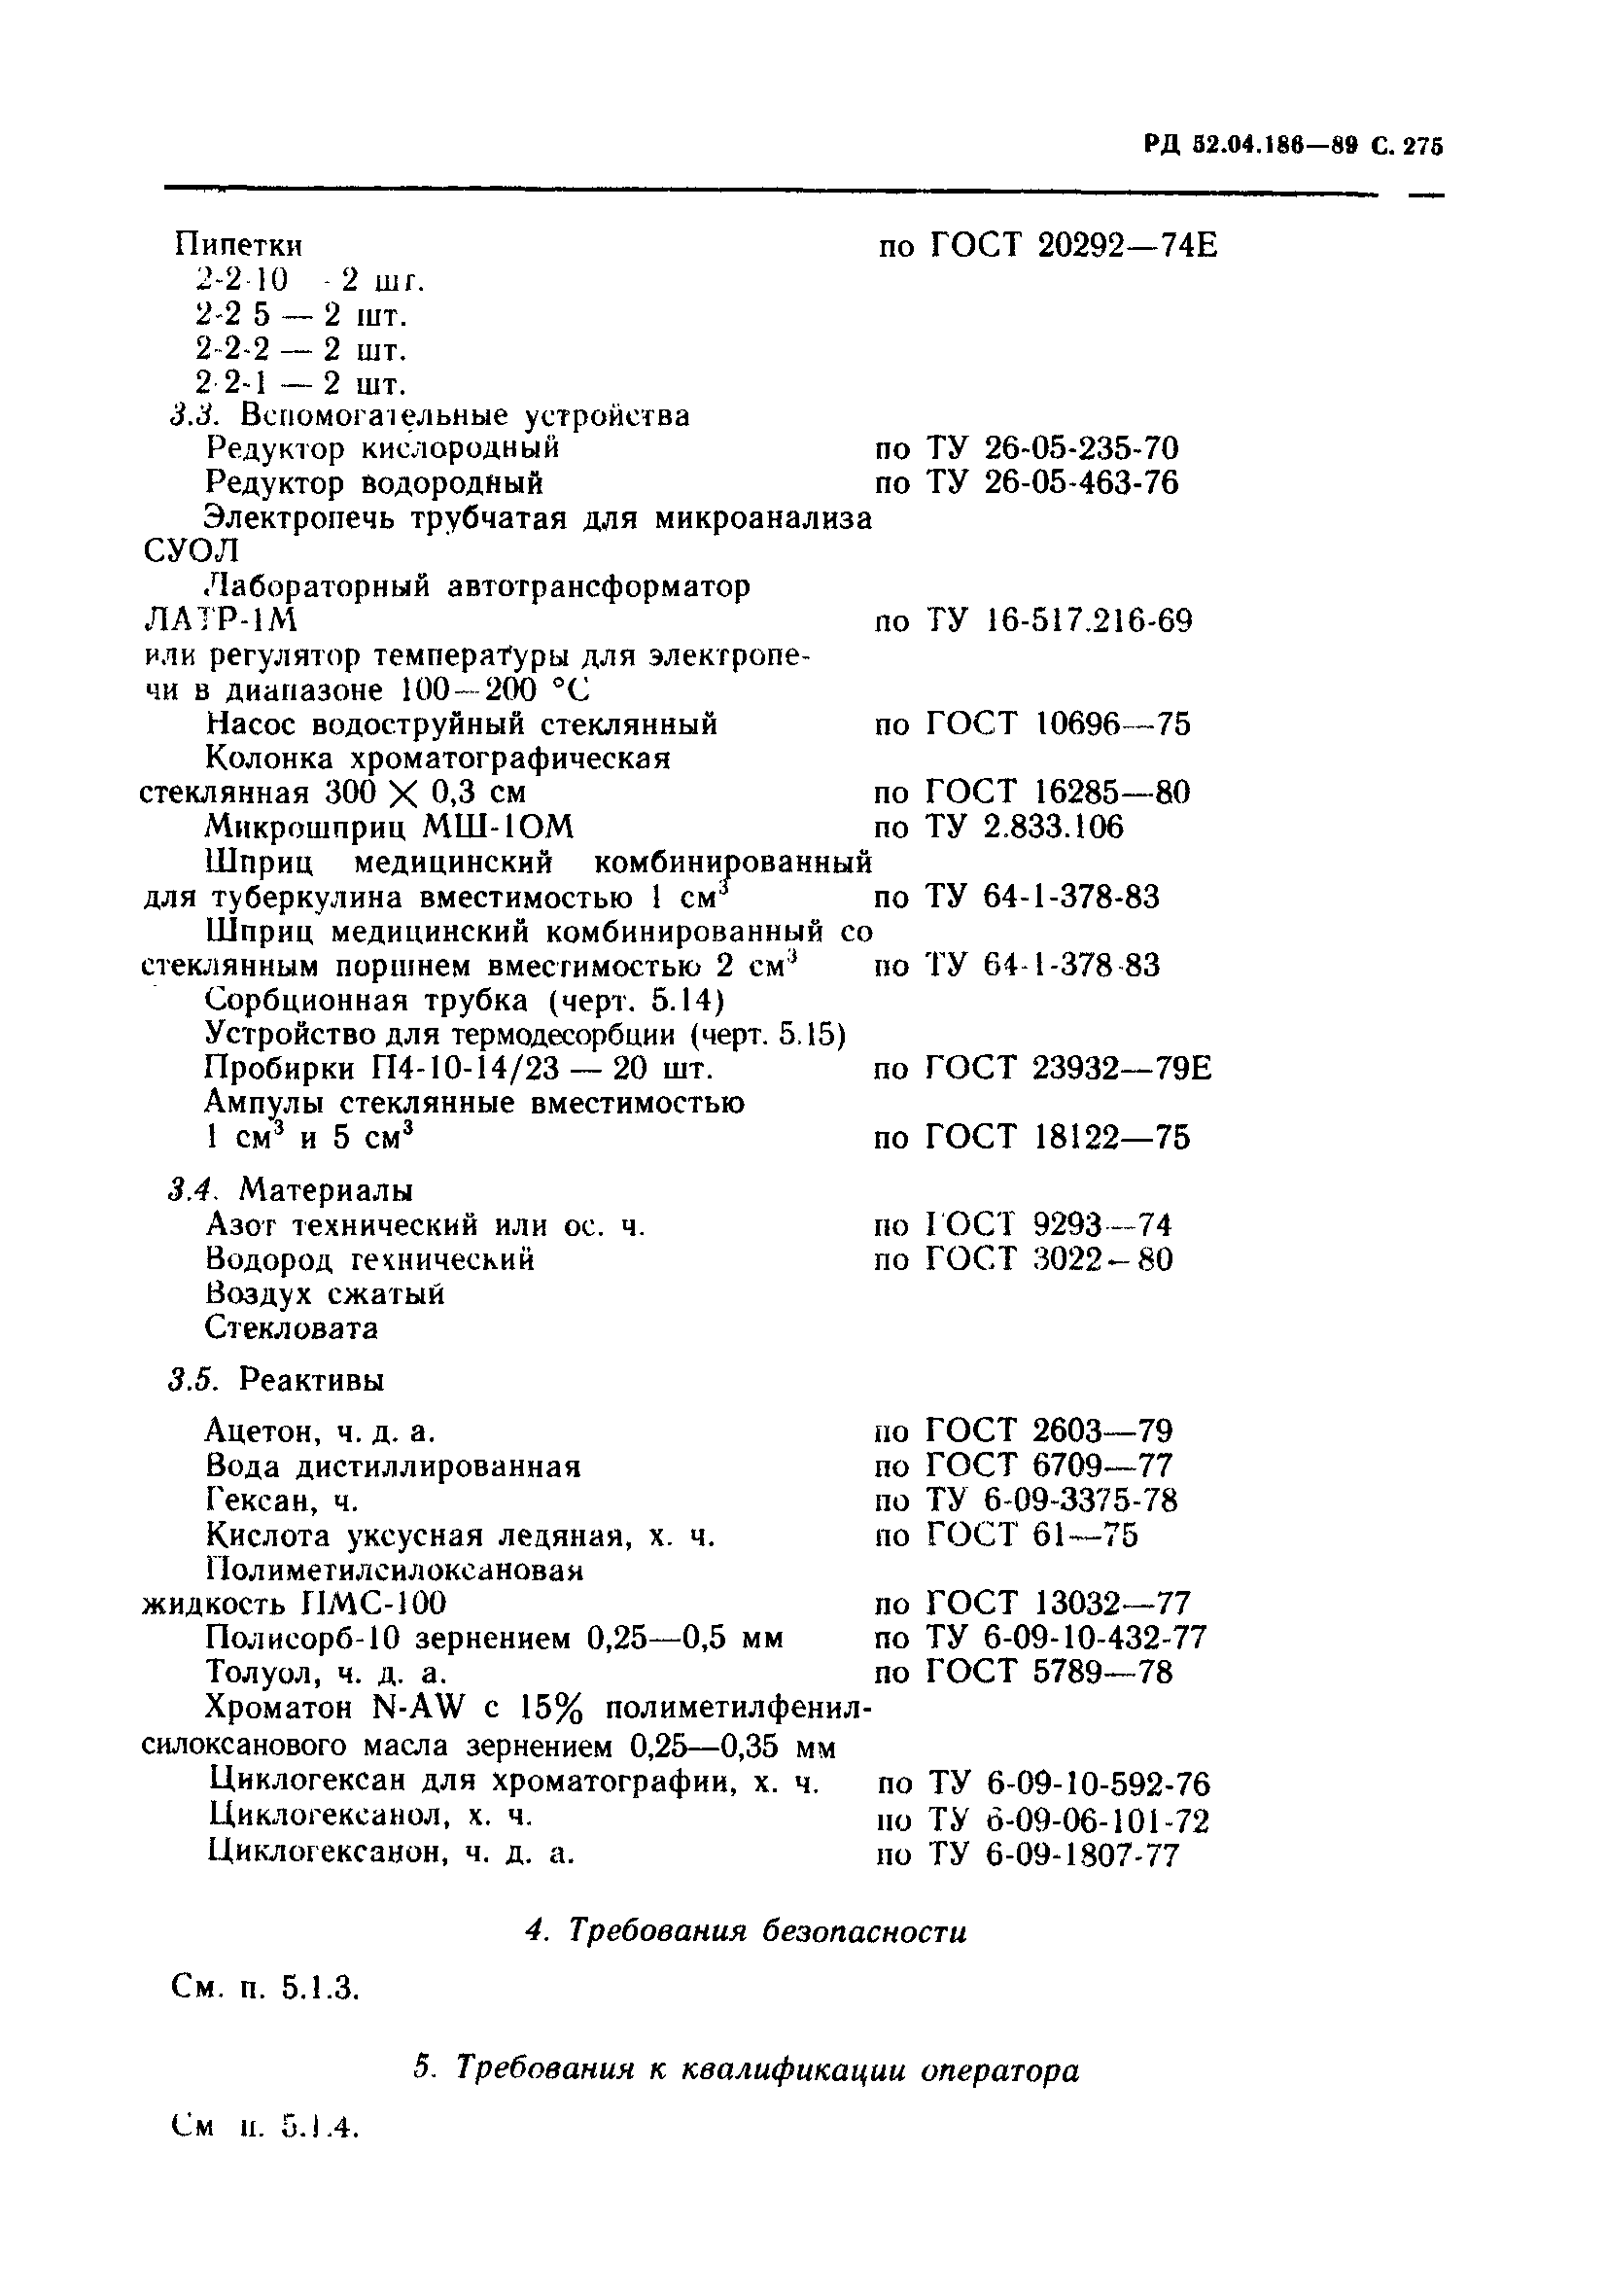 РД 52.04.186-89